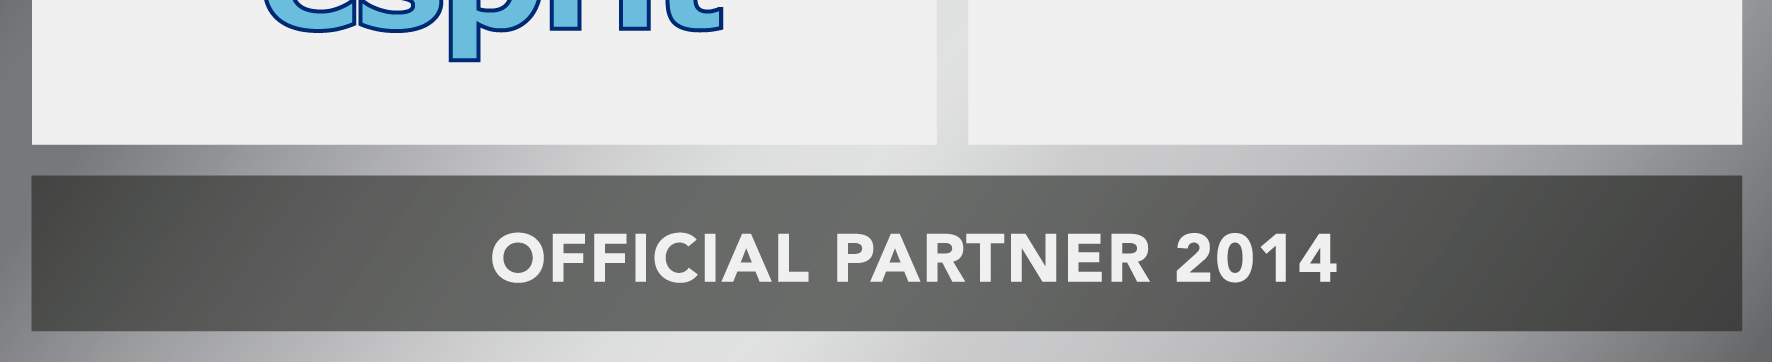 Referenze Clienti principali Riconoscimenti Partnership